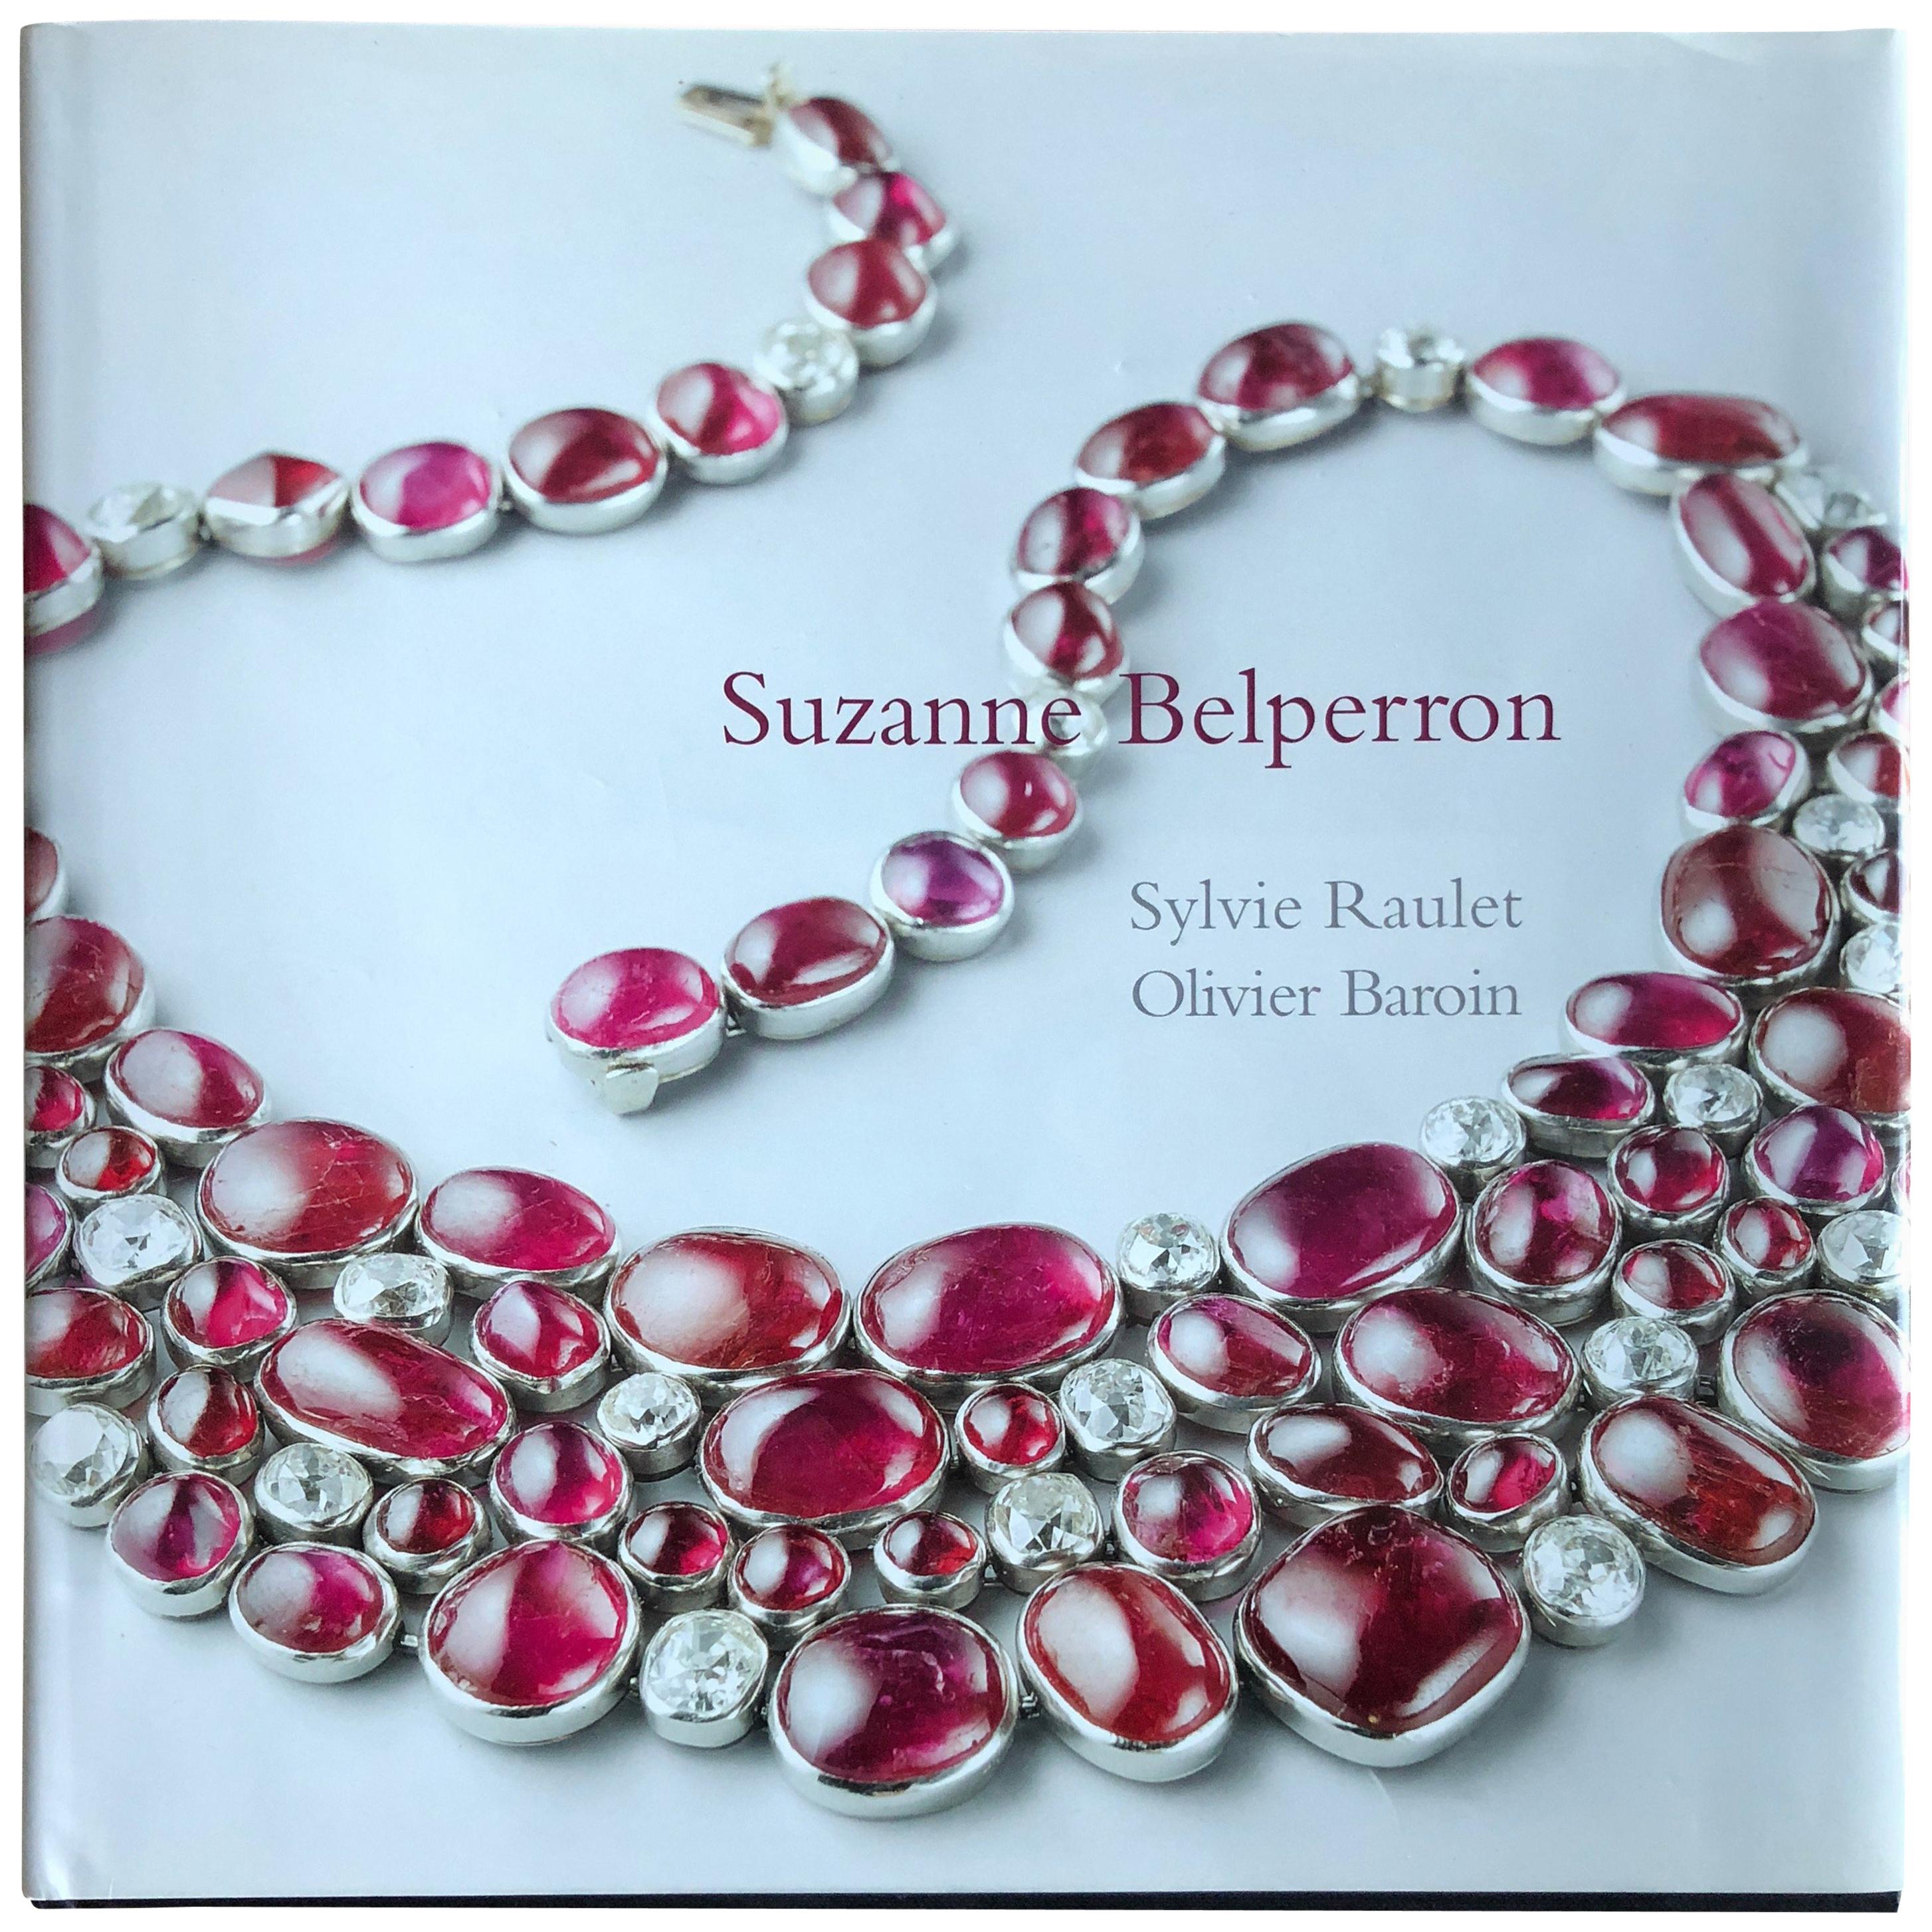 Suzanne Belperron Rare Jewelry Book 